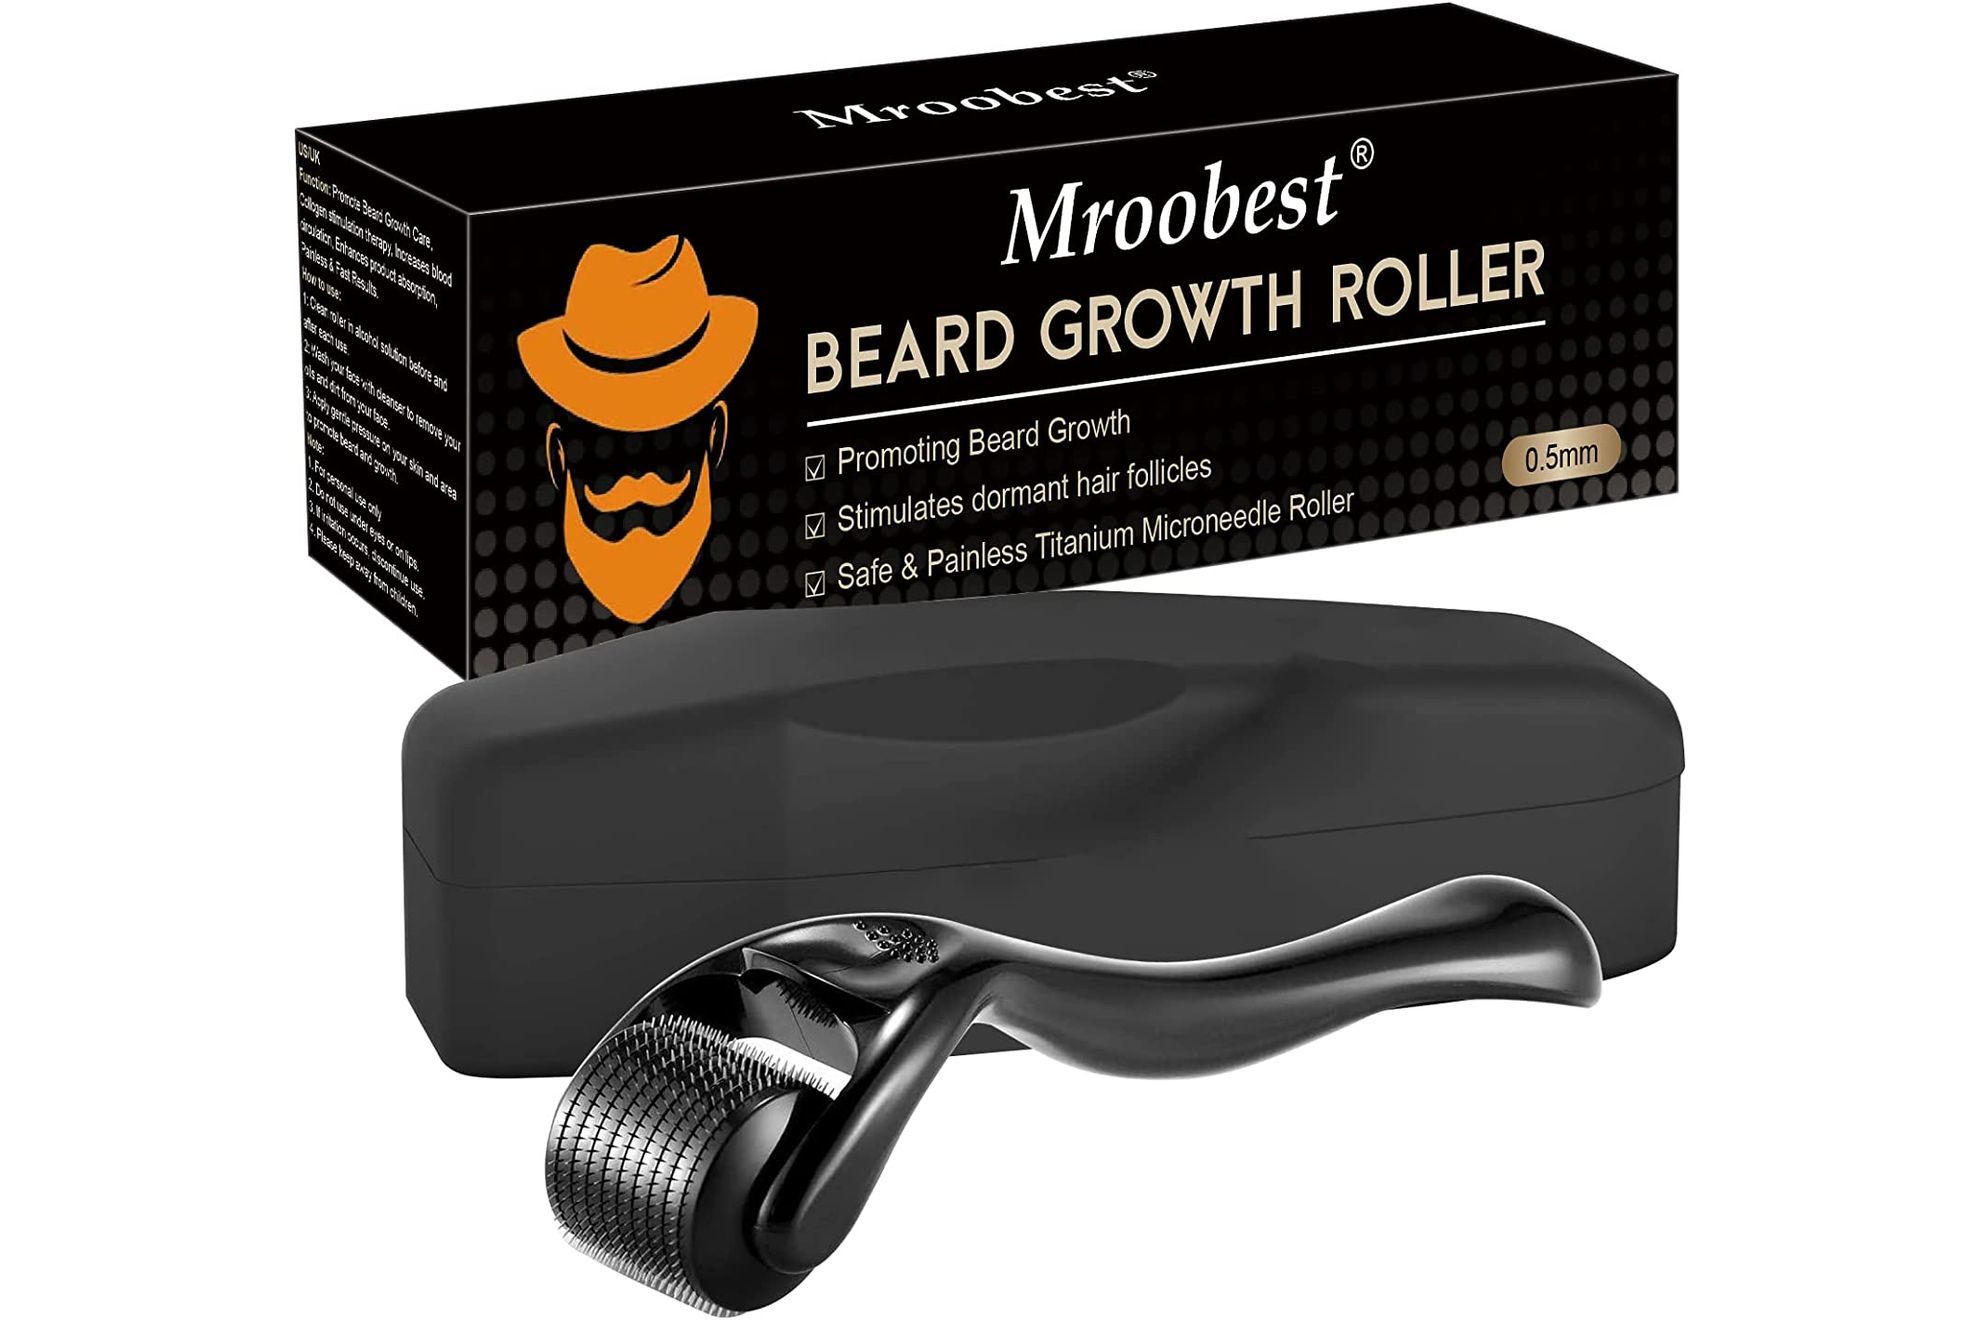 Rodillos para una barba más fuerte y sana: así funcionan estos 'gadgets' de belleza masculina que arrasan en Amazon (y que también sirven contra la alopecia)